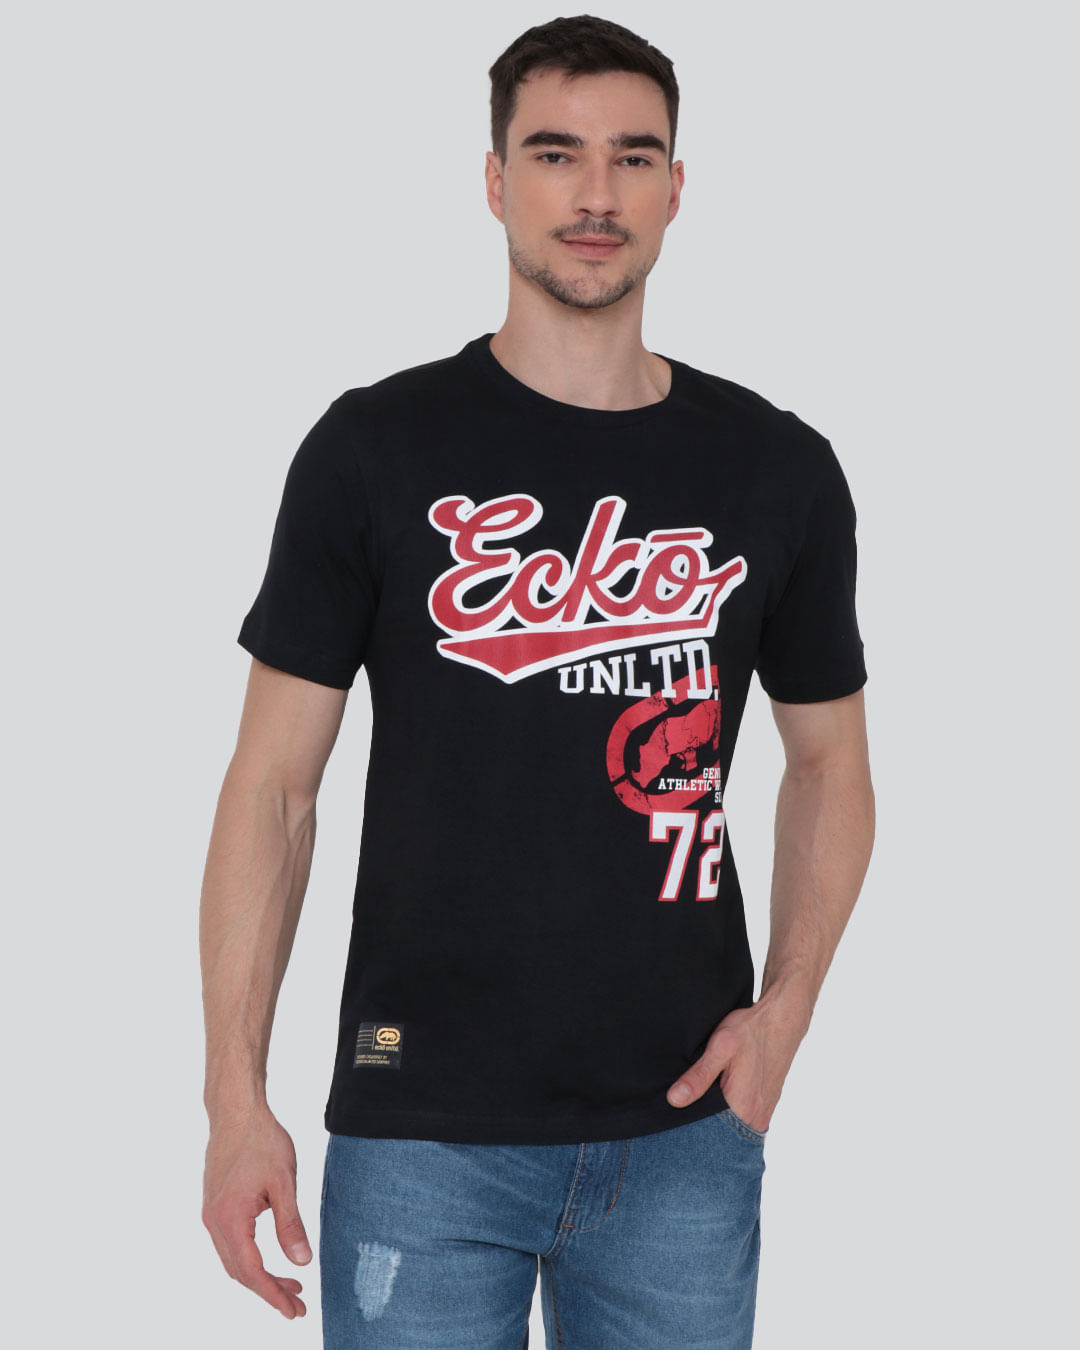 Camiseta Masculina Estampa Ecko Preta